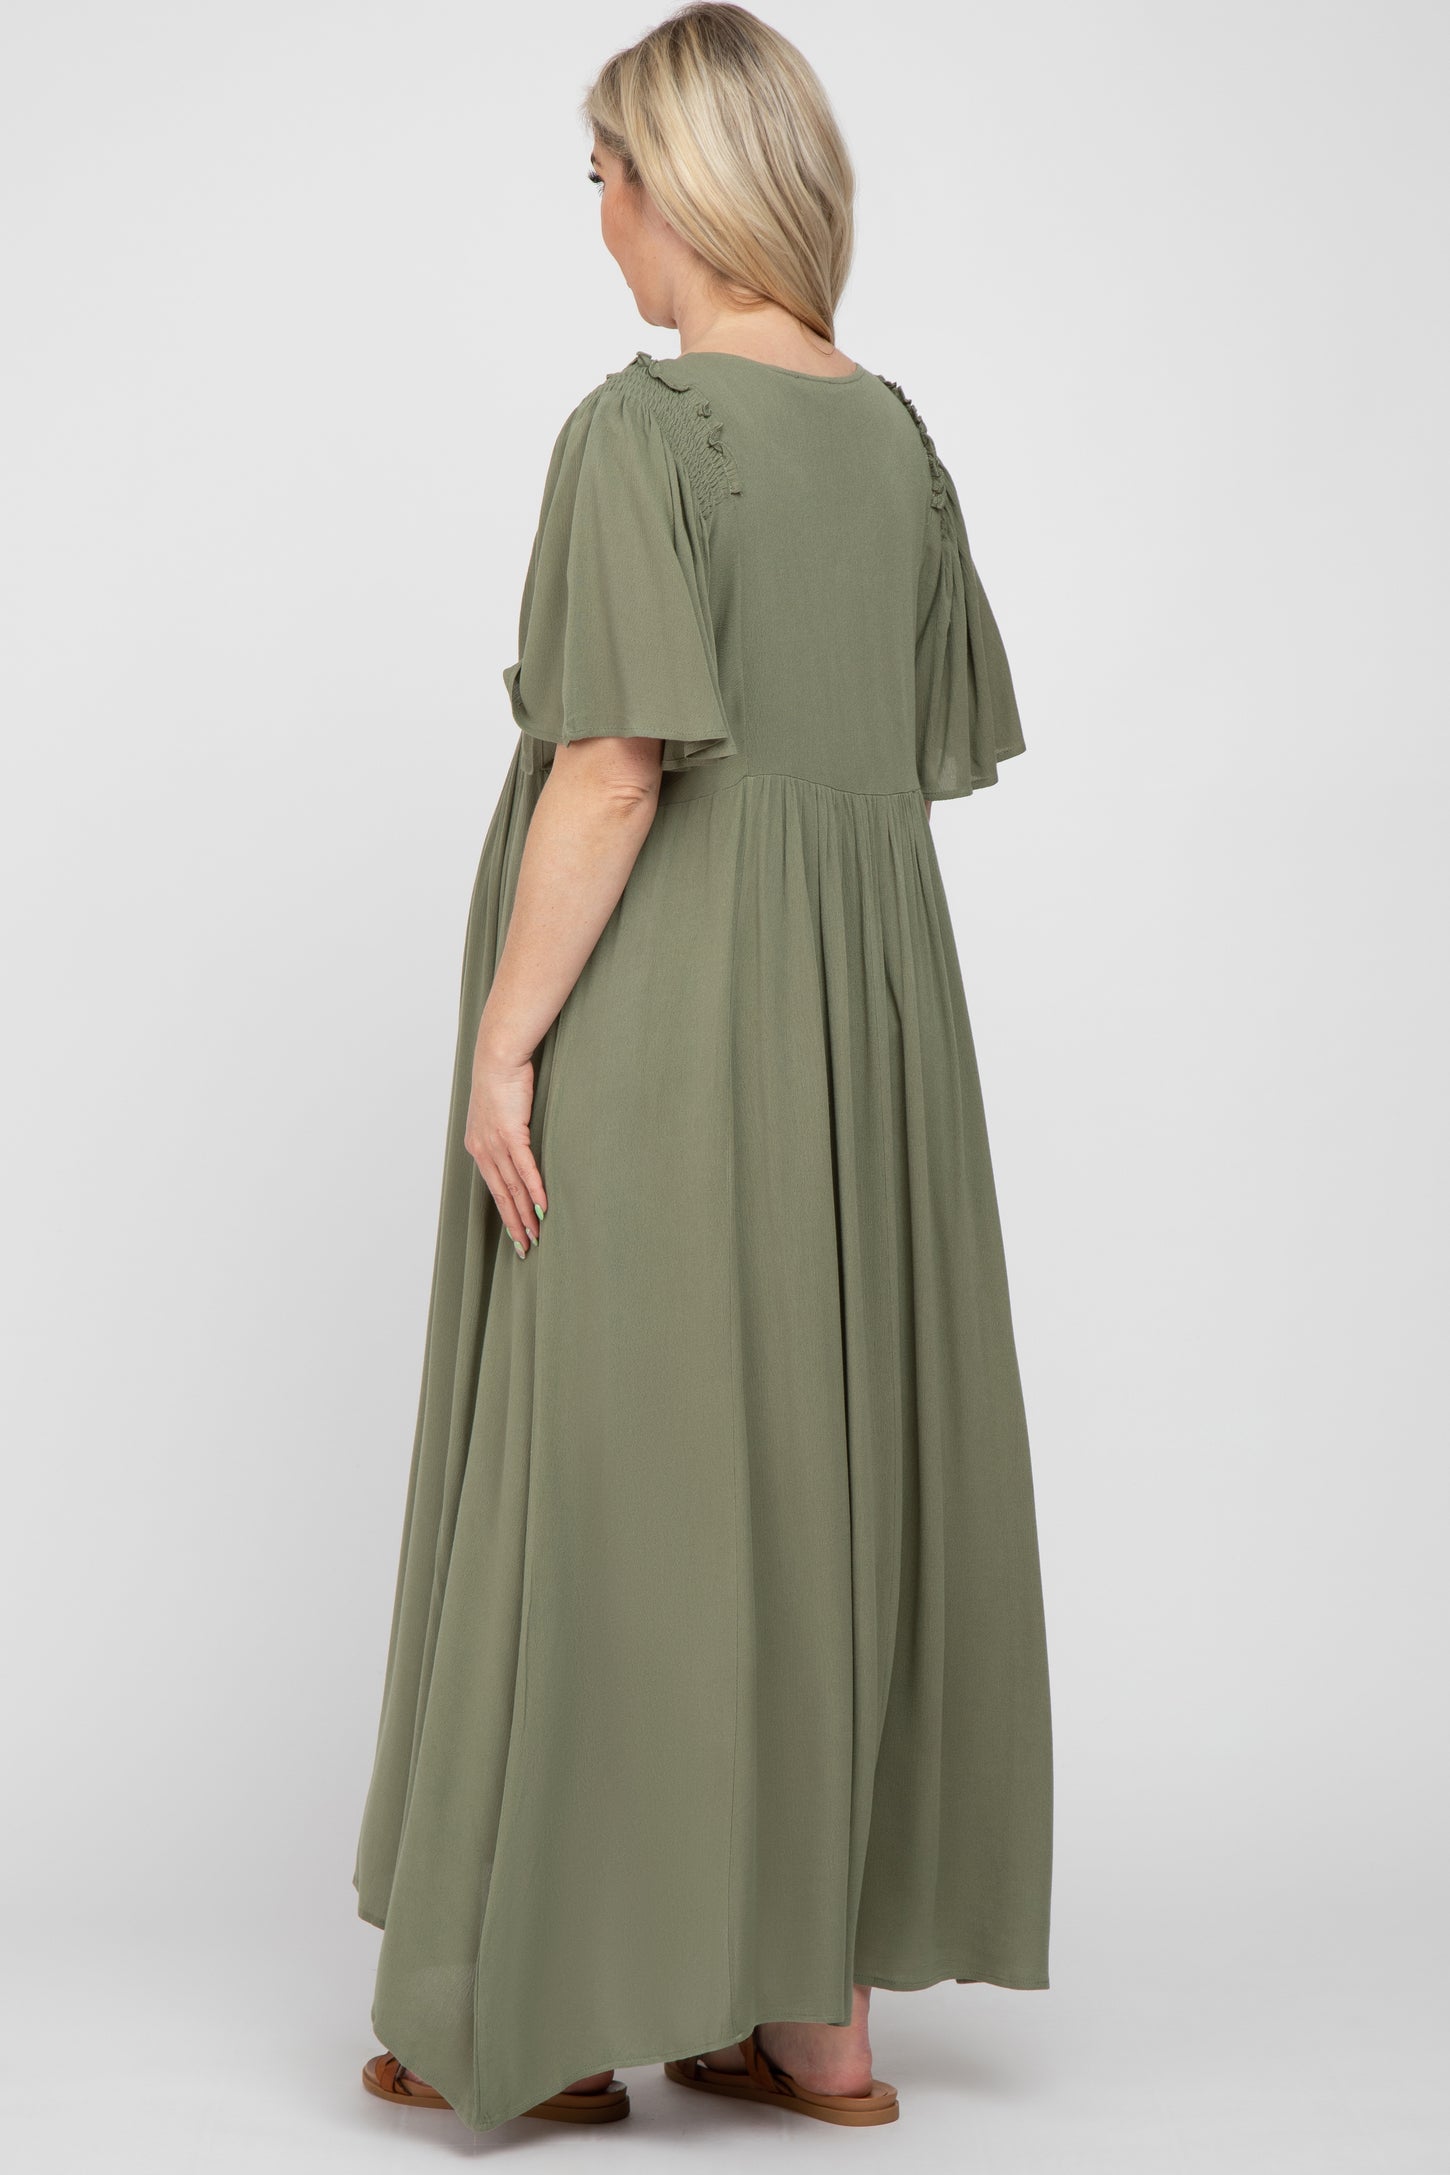 Olive Smocked Ruffle Shoulder Maternity Maxi Dress